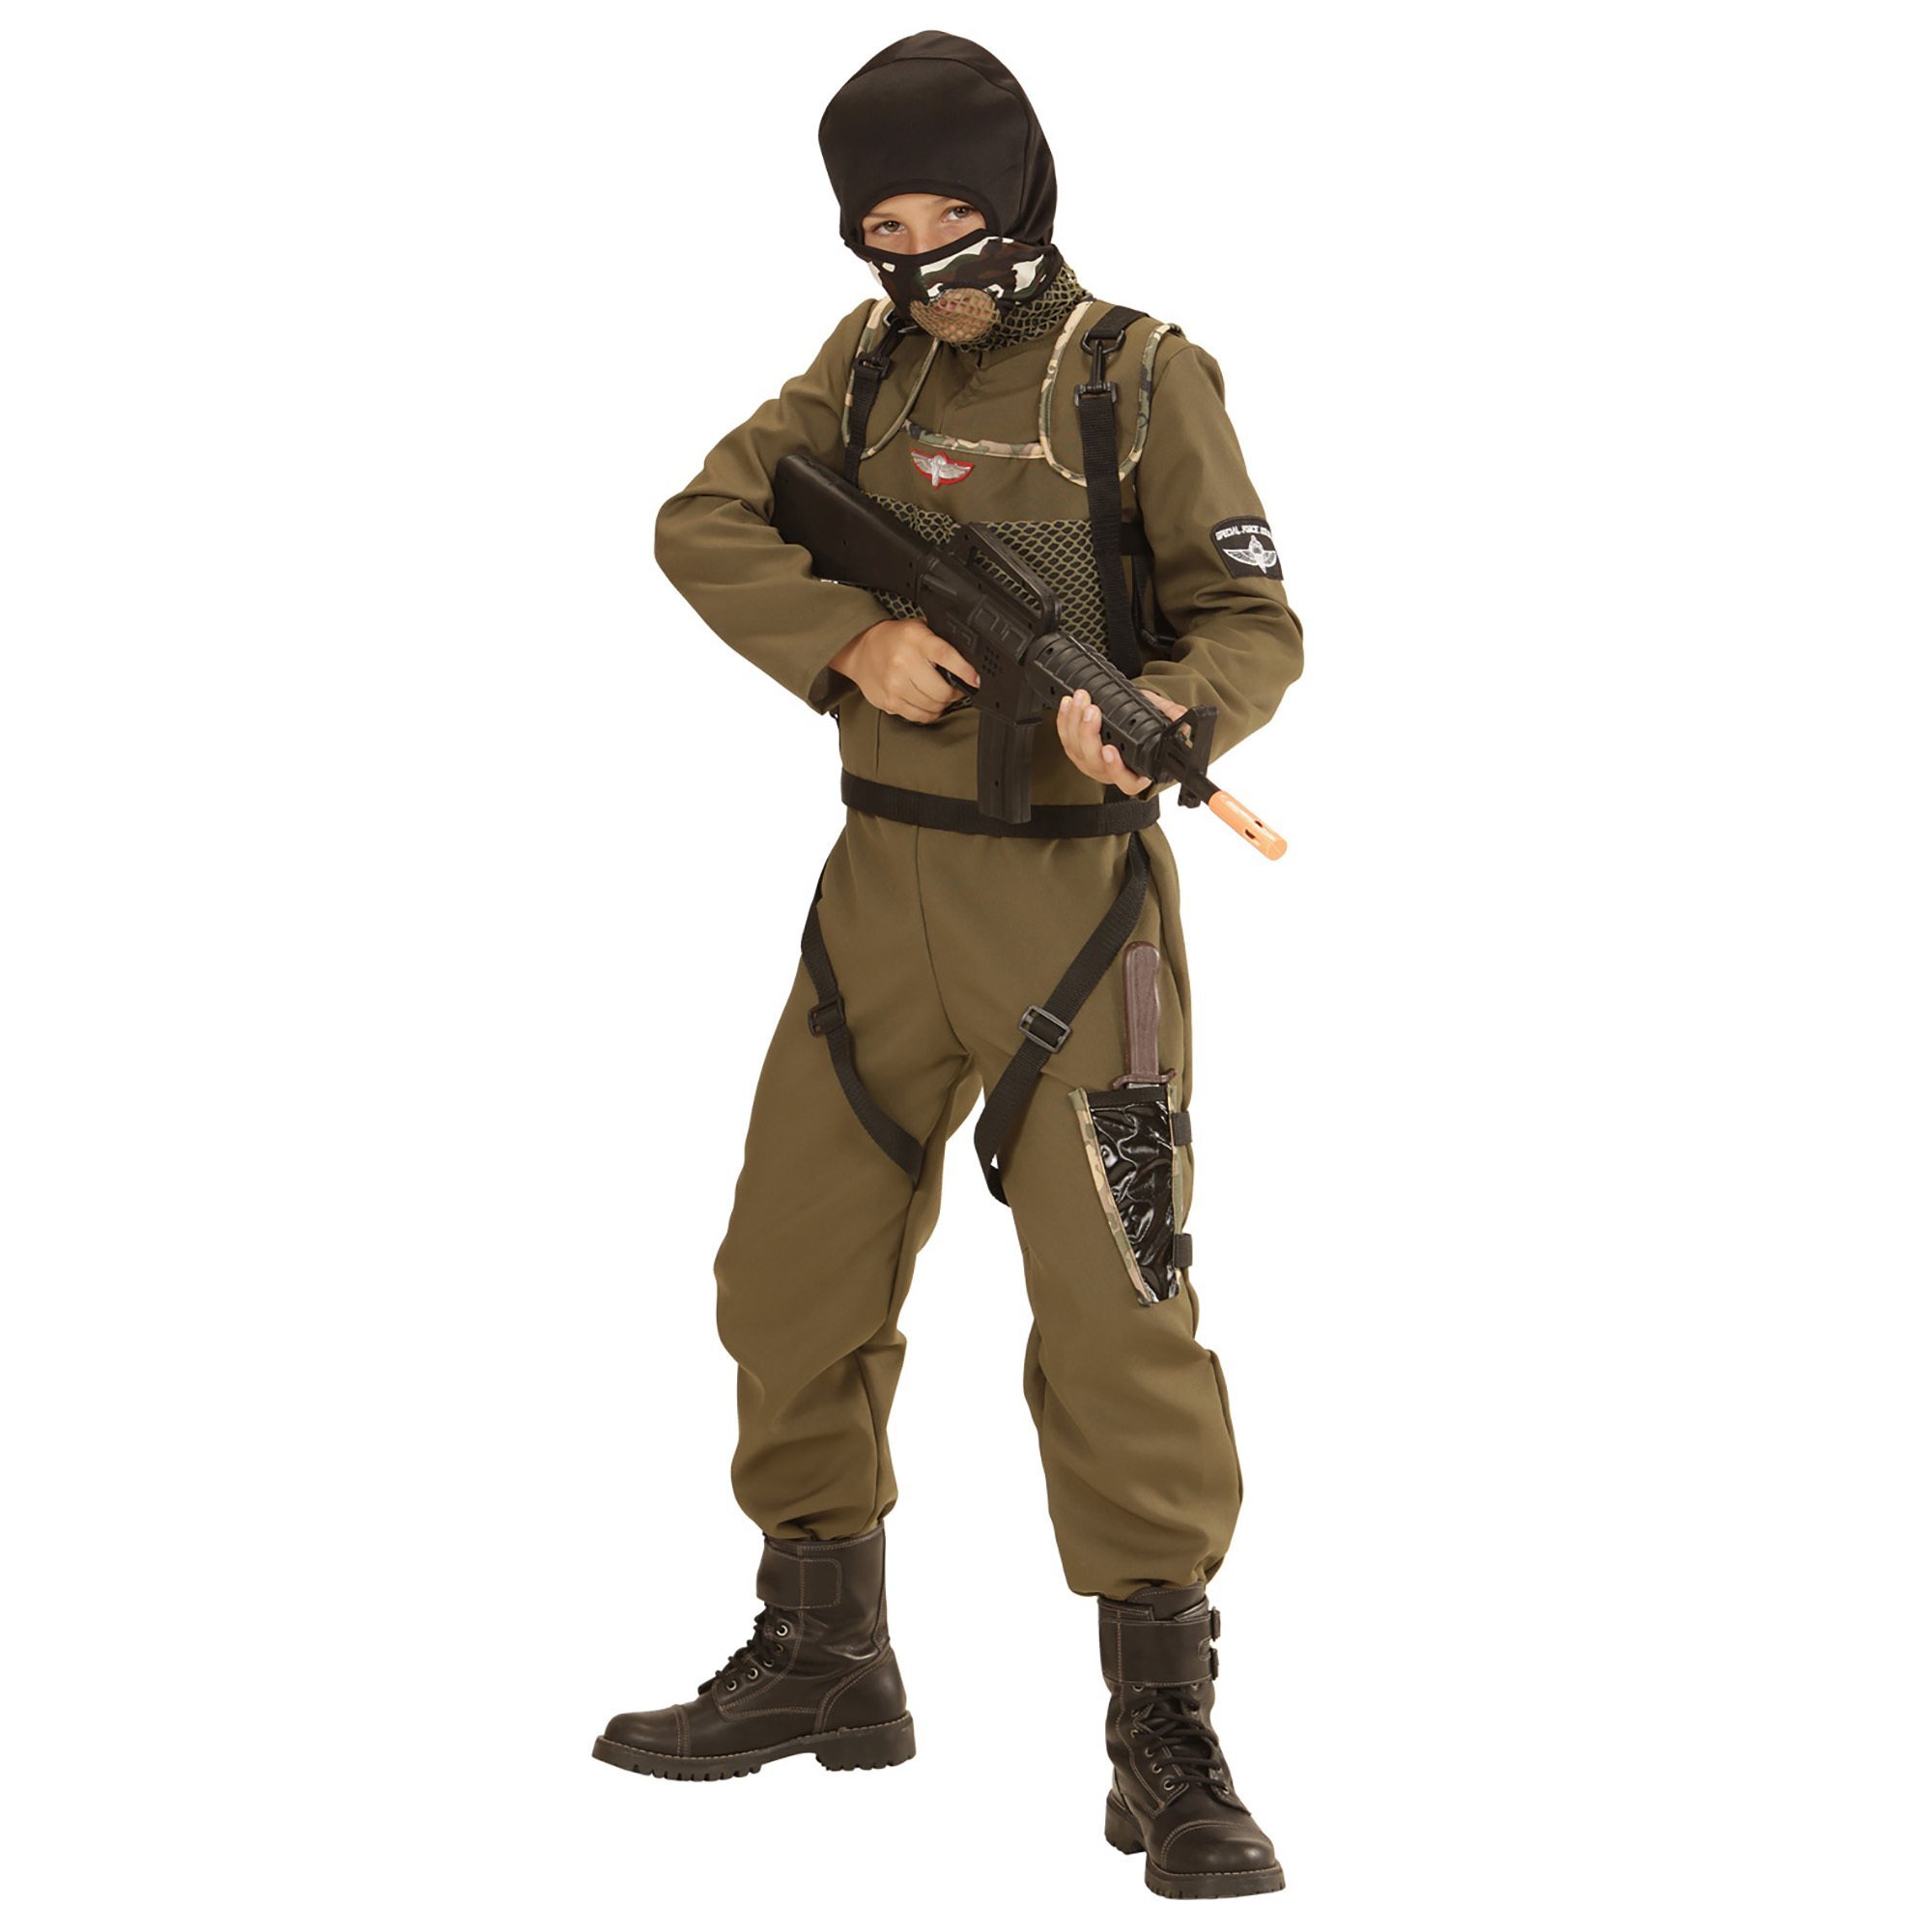 Parachutist special force soldaat kostuum jongen stoer outfitje